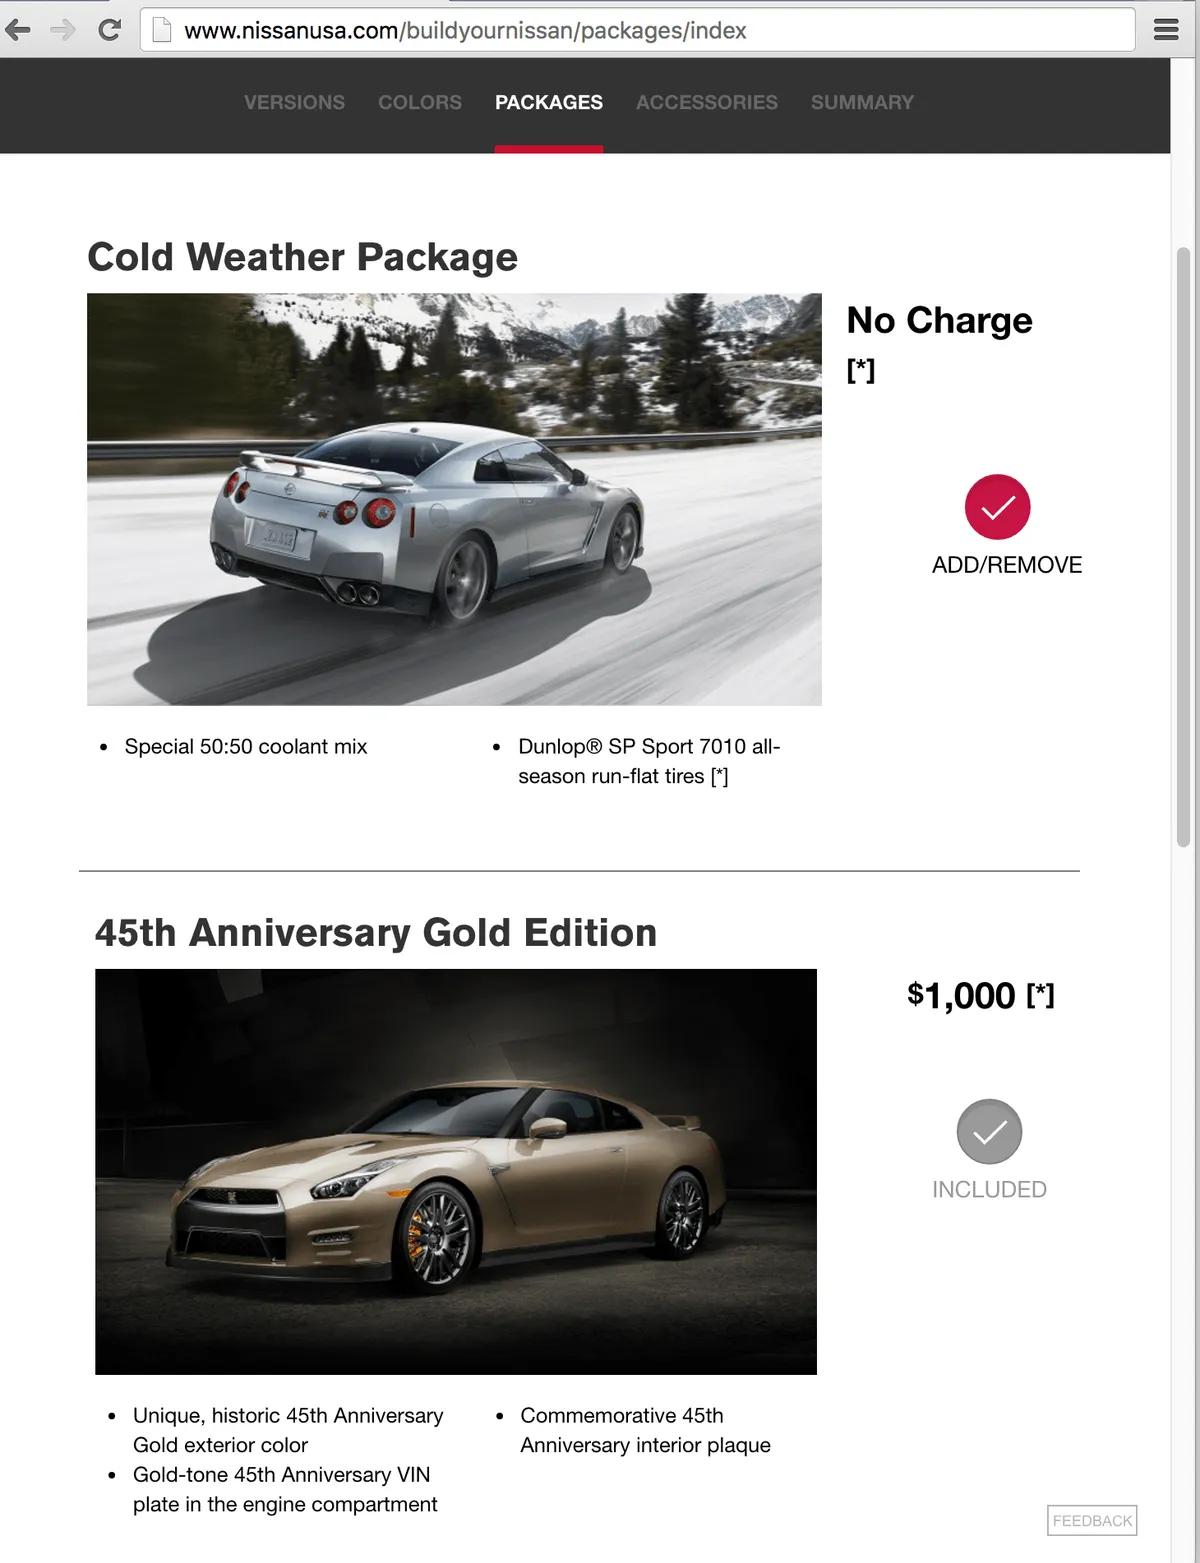 Nissan: Responsive website redesign